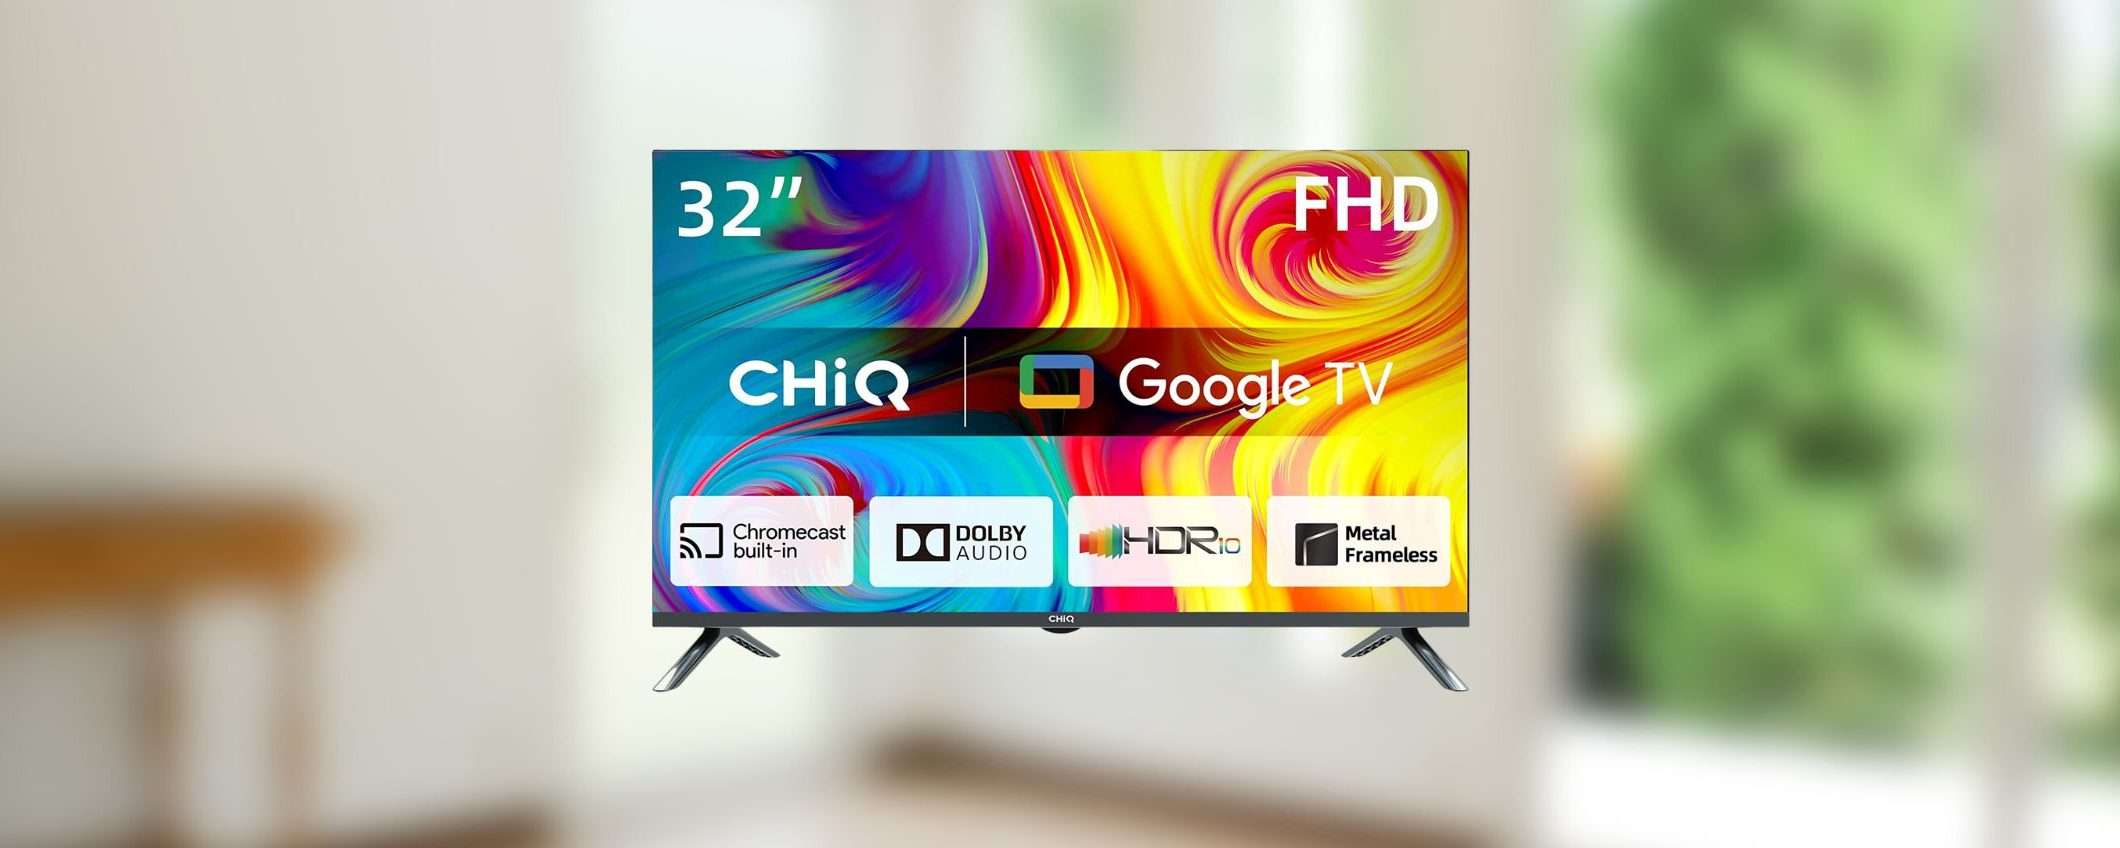 CHiQ TV LED 32' HD: prezzo e offerte